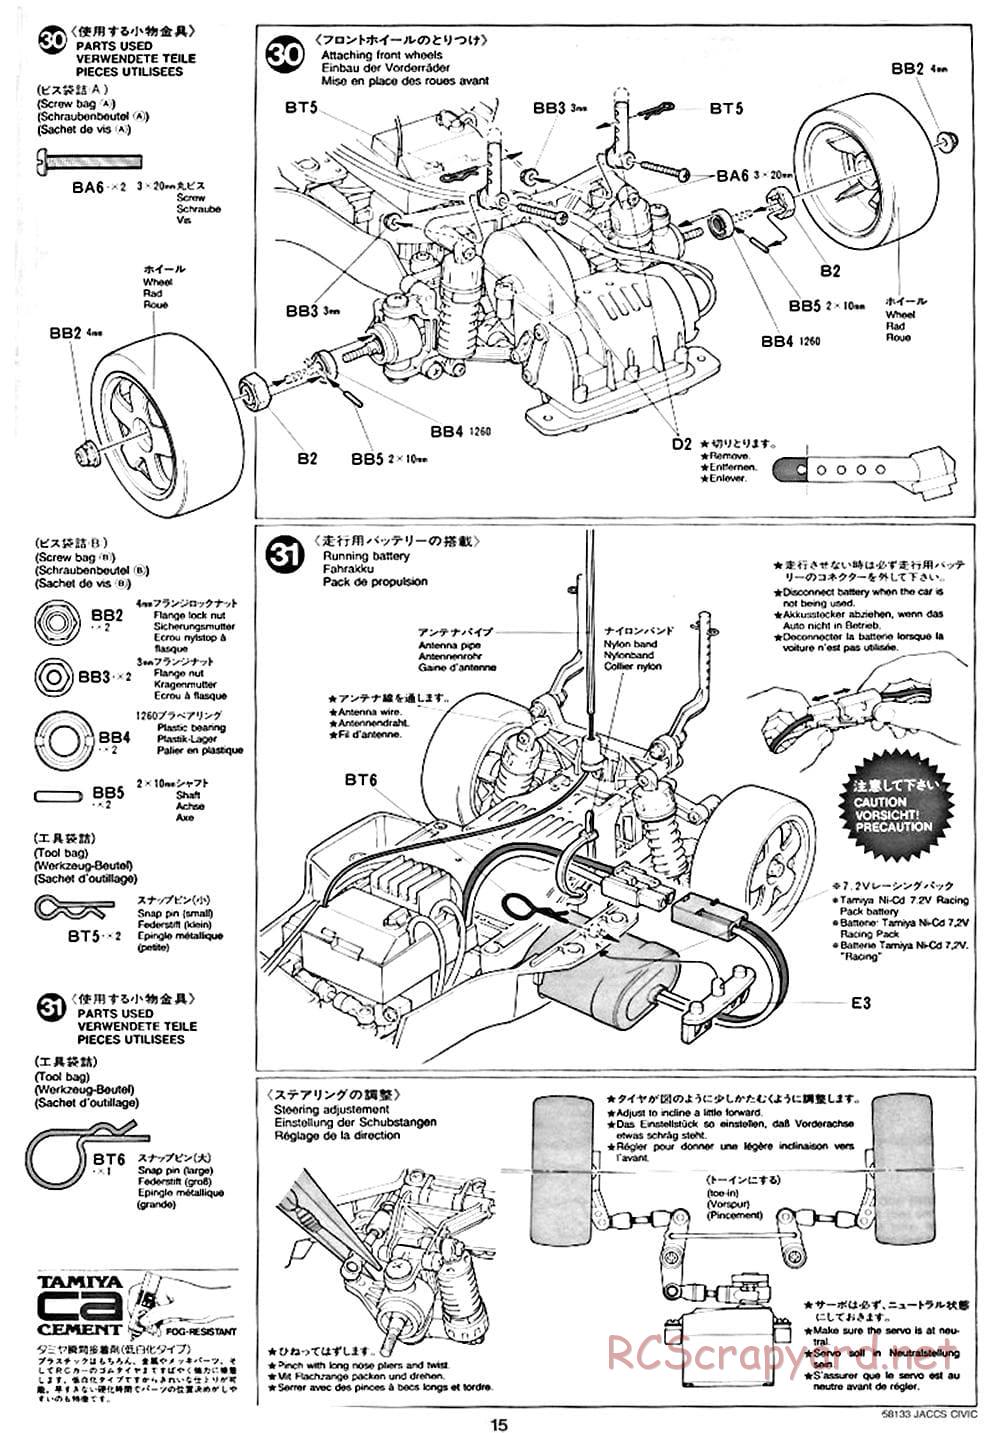 Tamiya - JACCS Honda Civic - FF-01 Chassis - Manual - Page 15